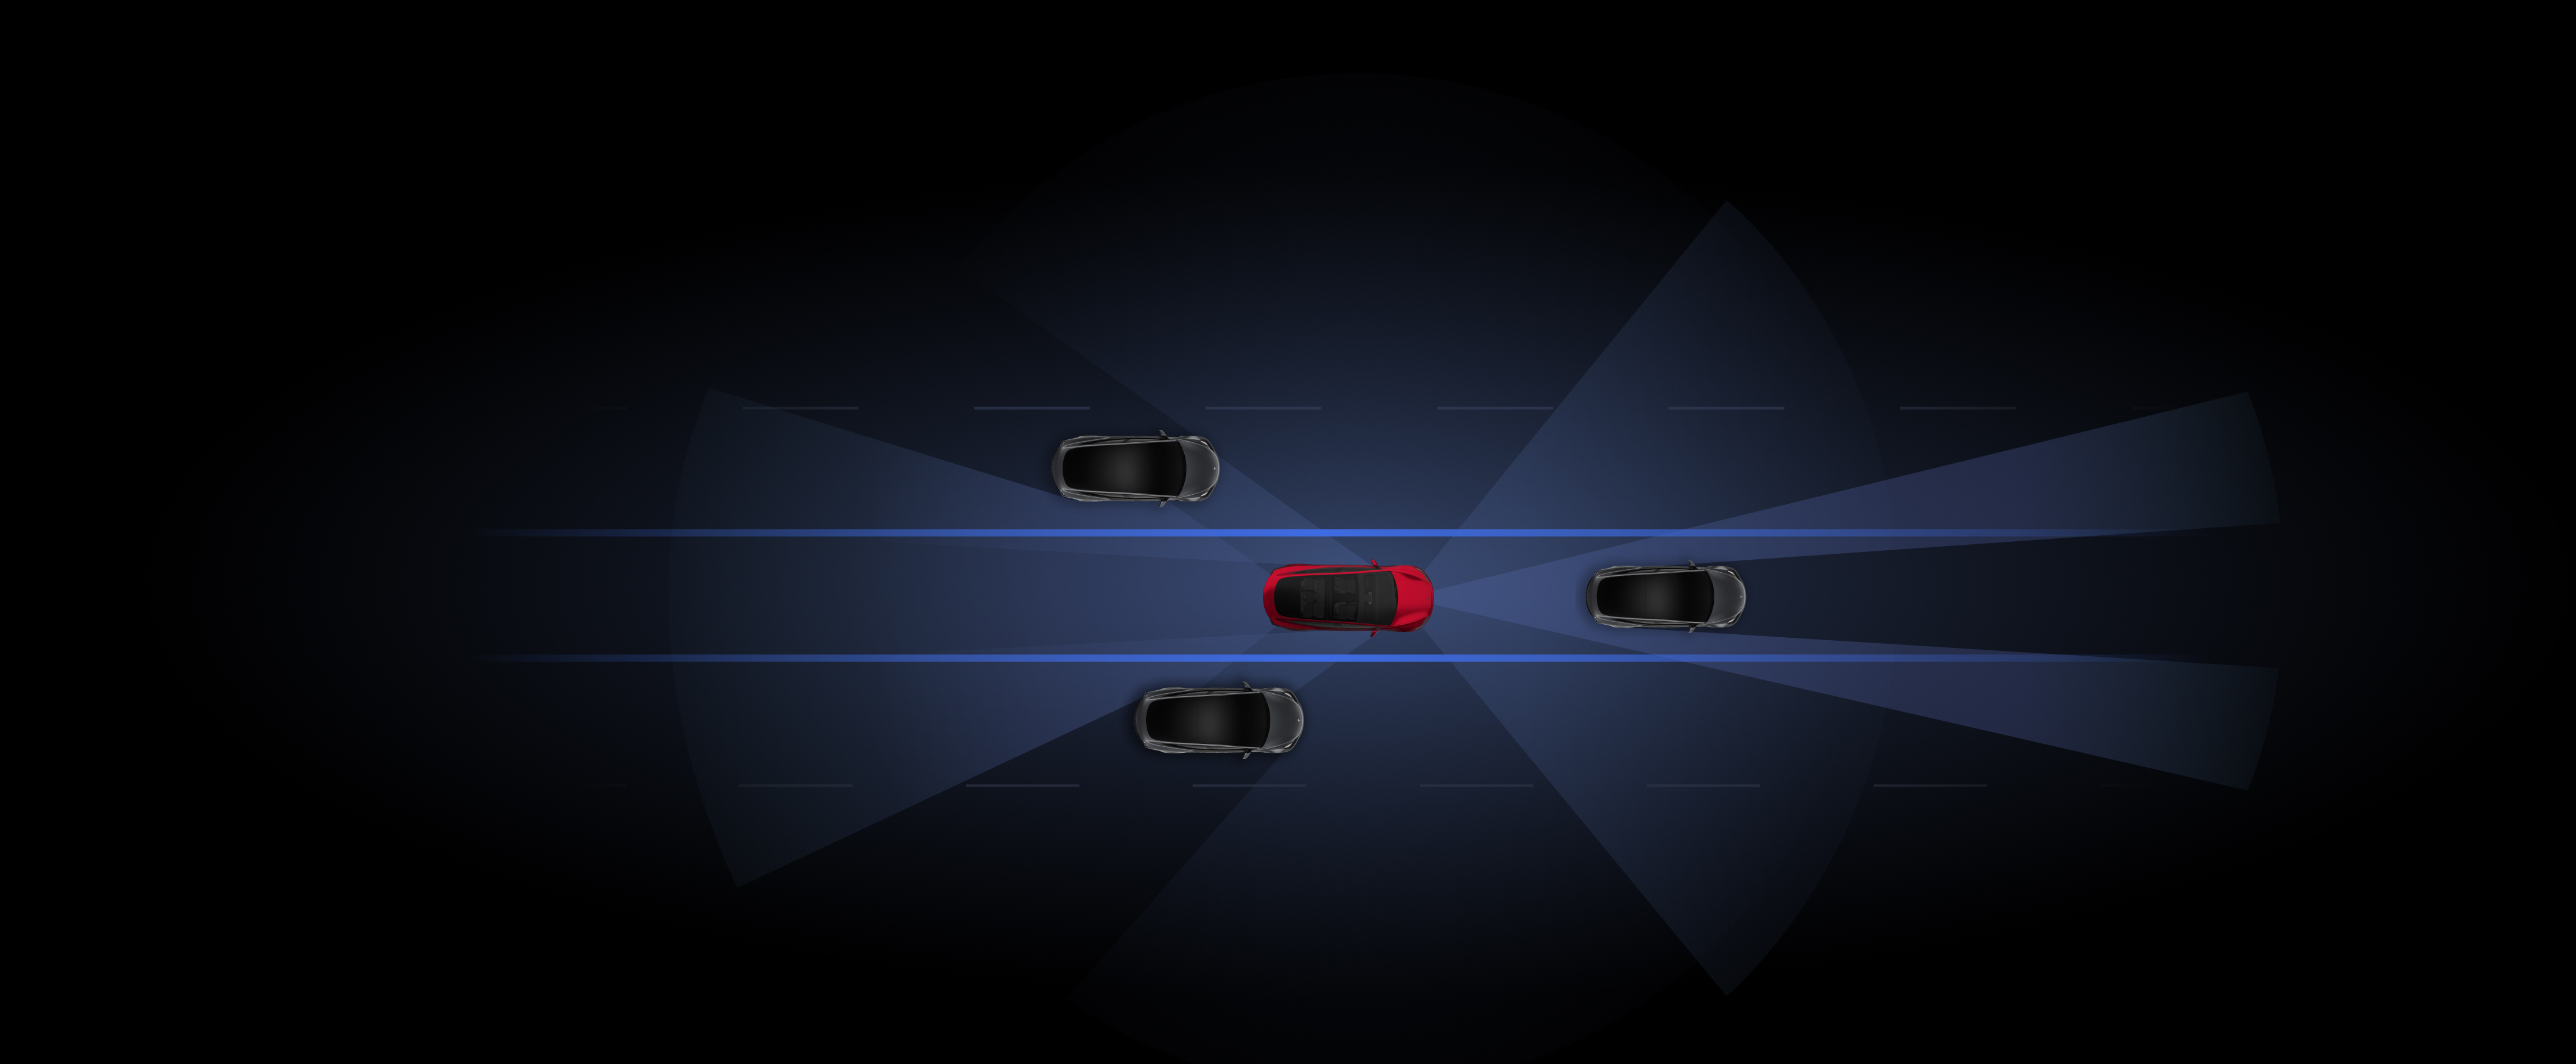 使用 Autopilot 自動輔助駕駛功能呈現的灰色和紅色 Tesla 車輛的可視化。 